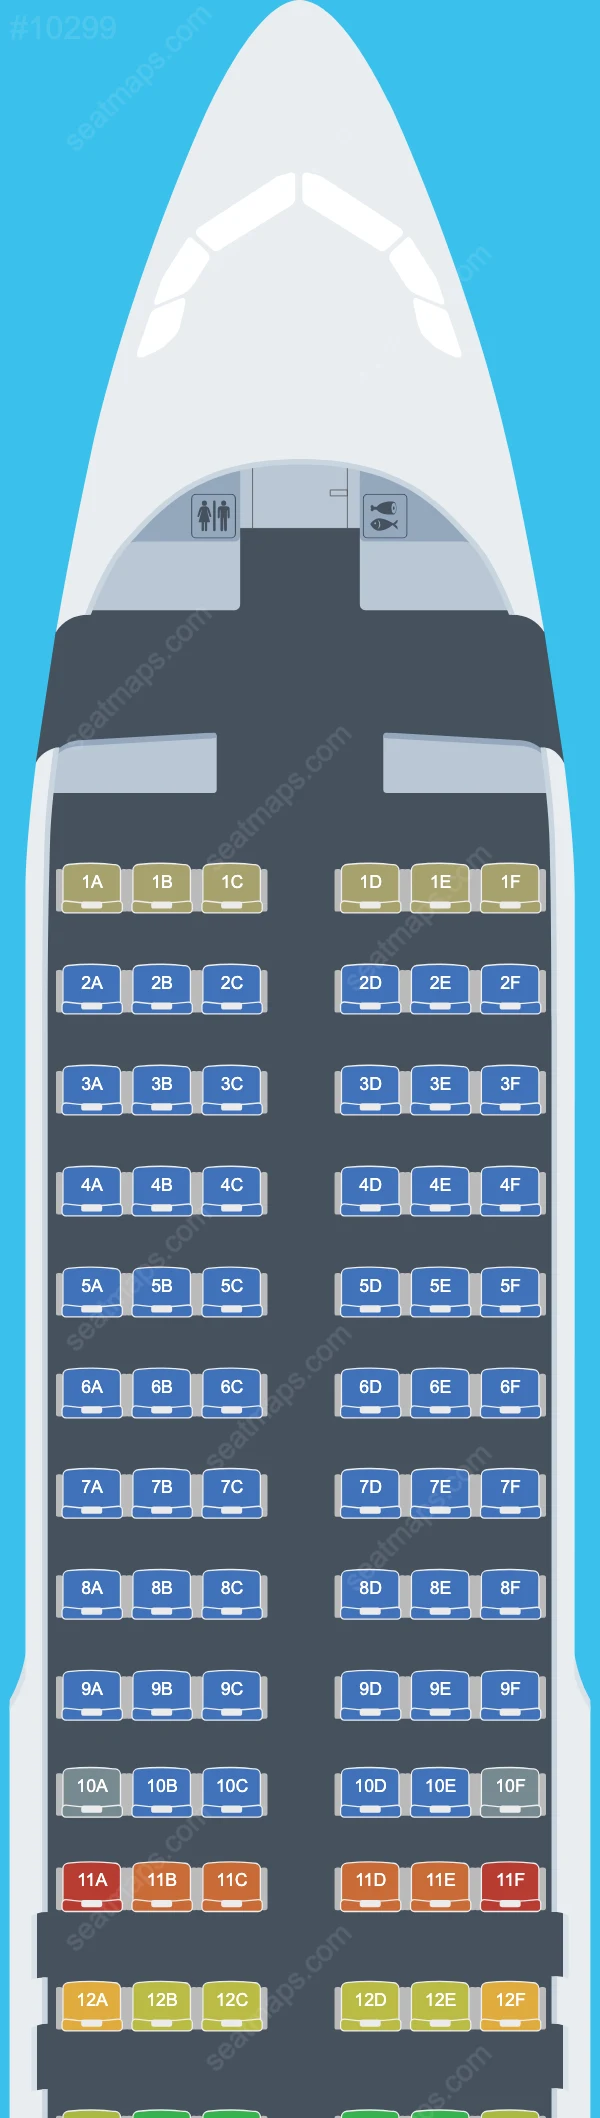 LATAM Airlines Peru Airbus A320 Seat Maps A320-200 V.2